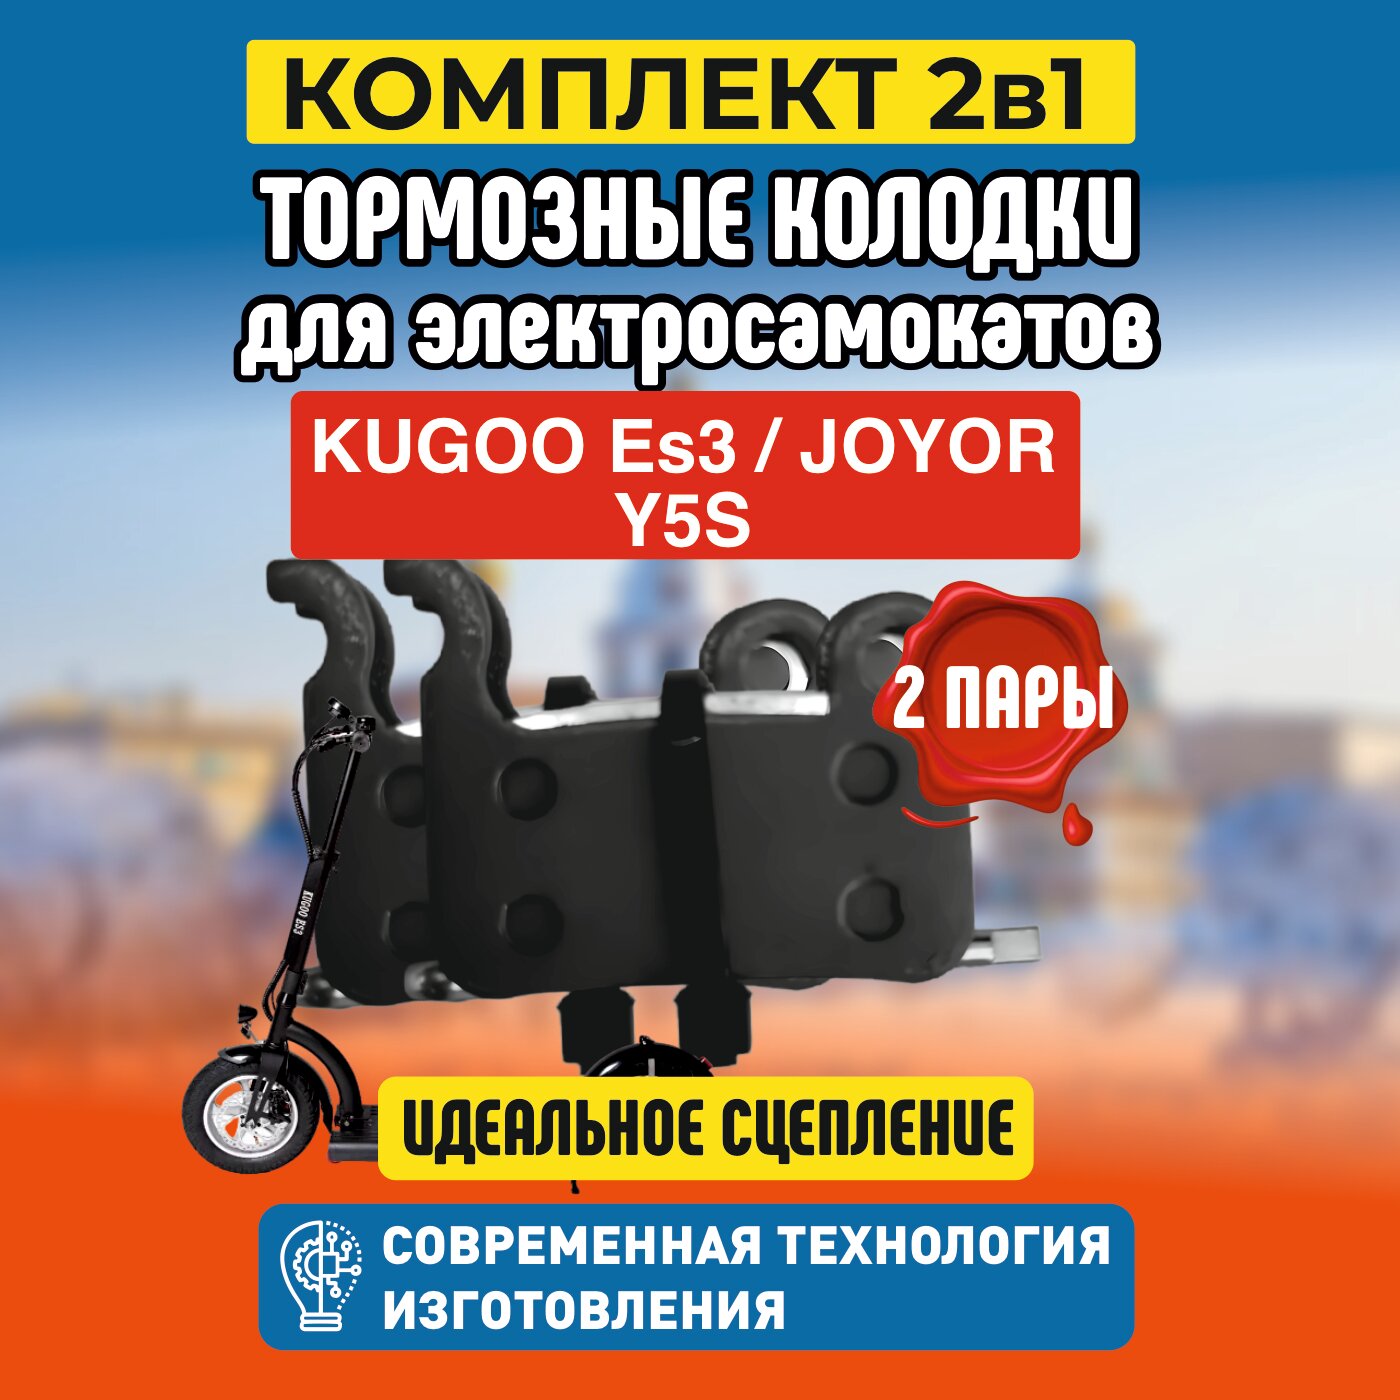 Тормозные колодки для электросамоката Kugoo ES3. Комплект 1+1